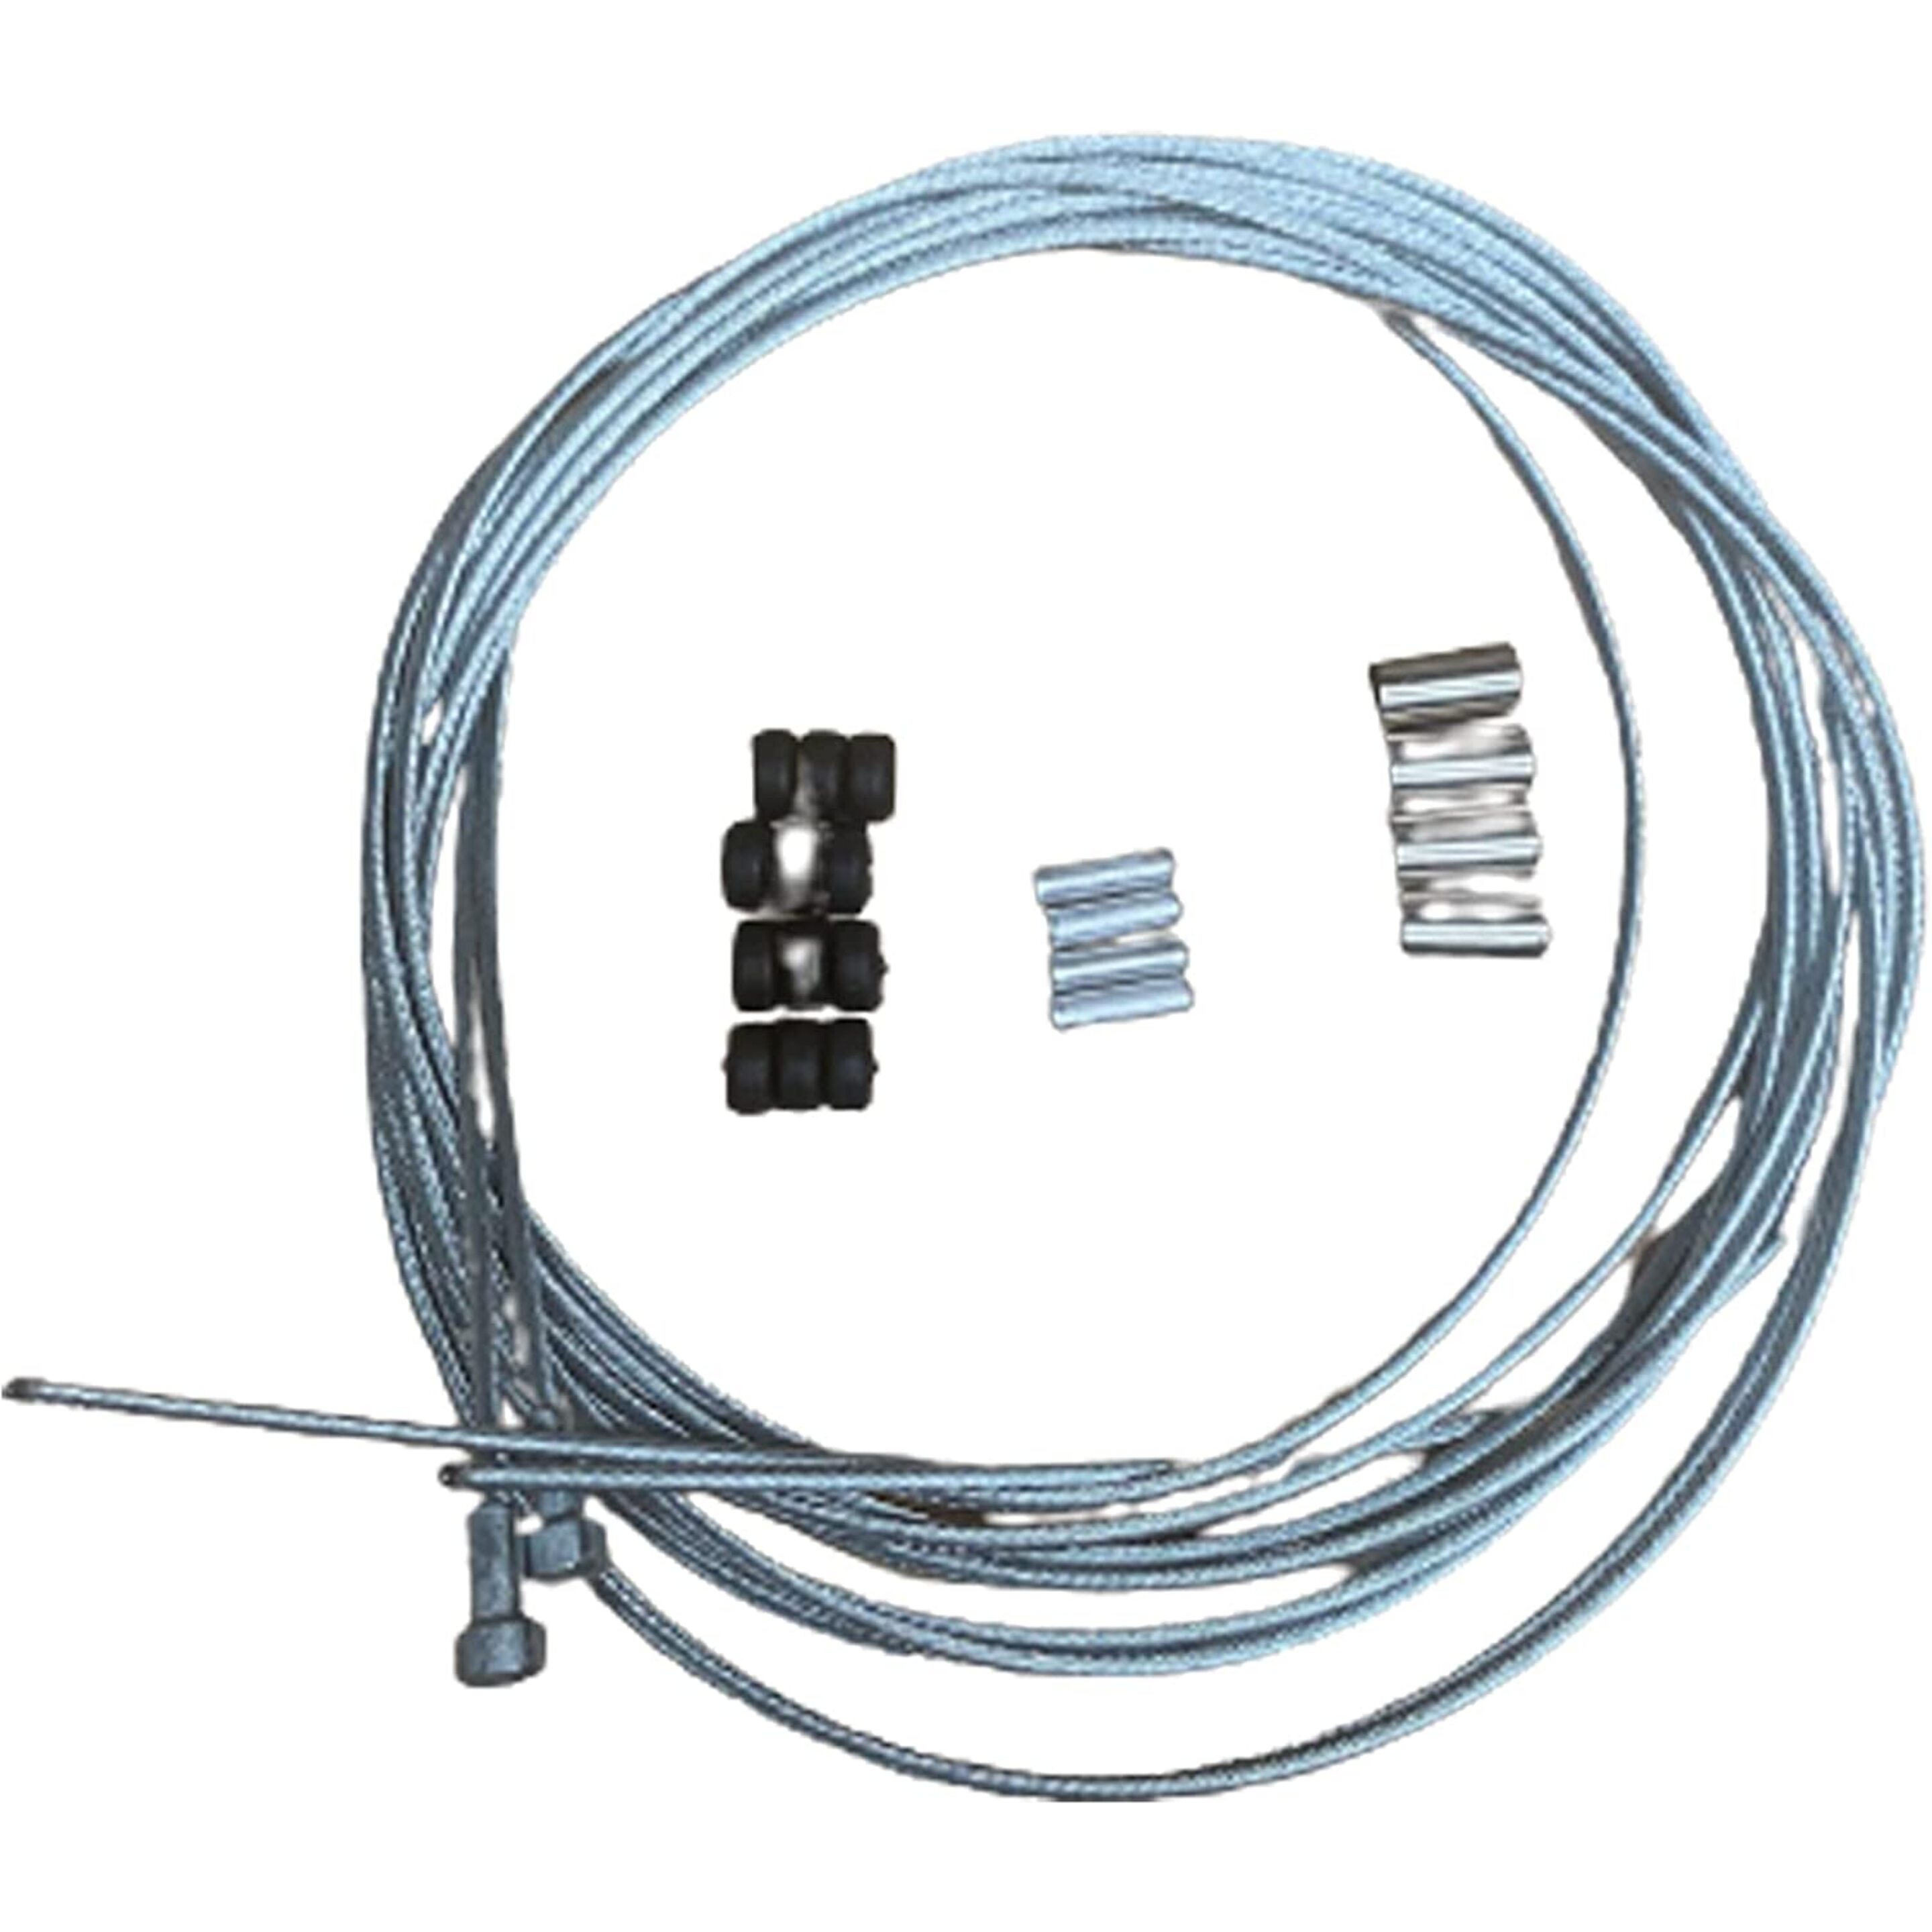 Kit De Cable De Freno Pera + Accesorios Cbb Shop - negro - 